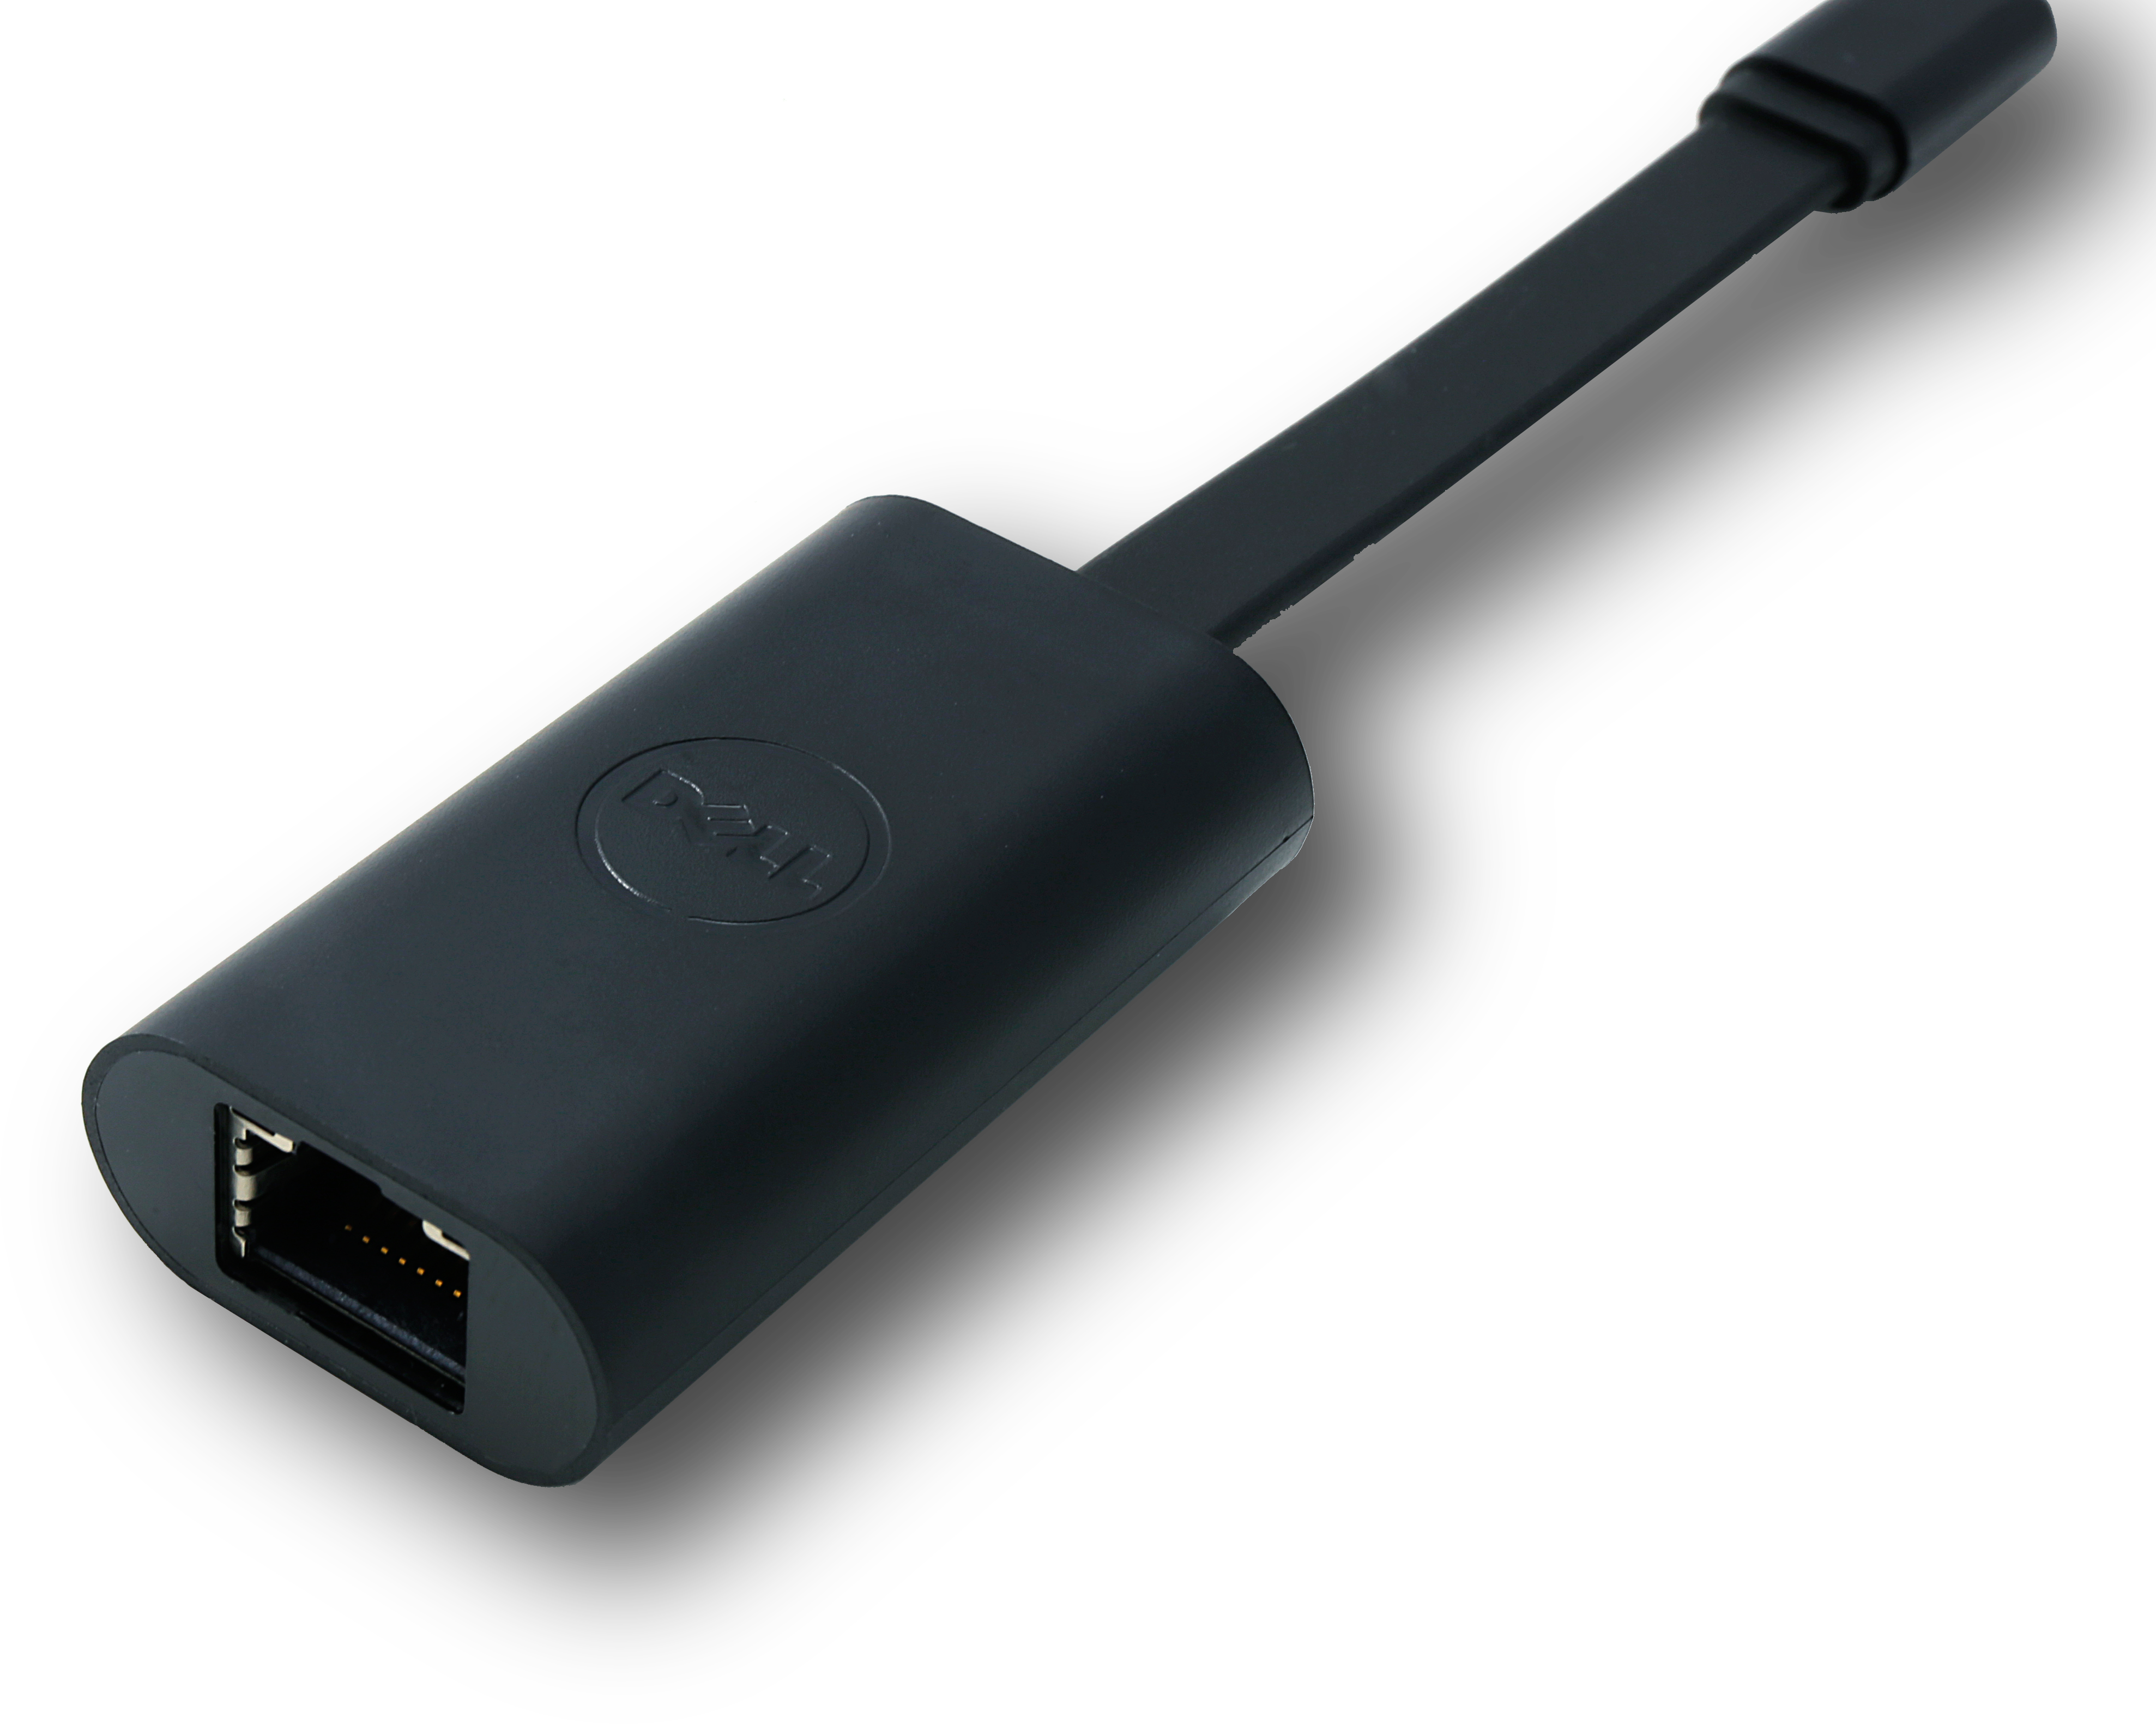 Adaptateur USB-C vers Ethernet + recharge